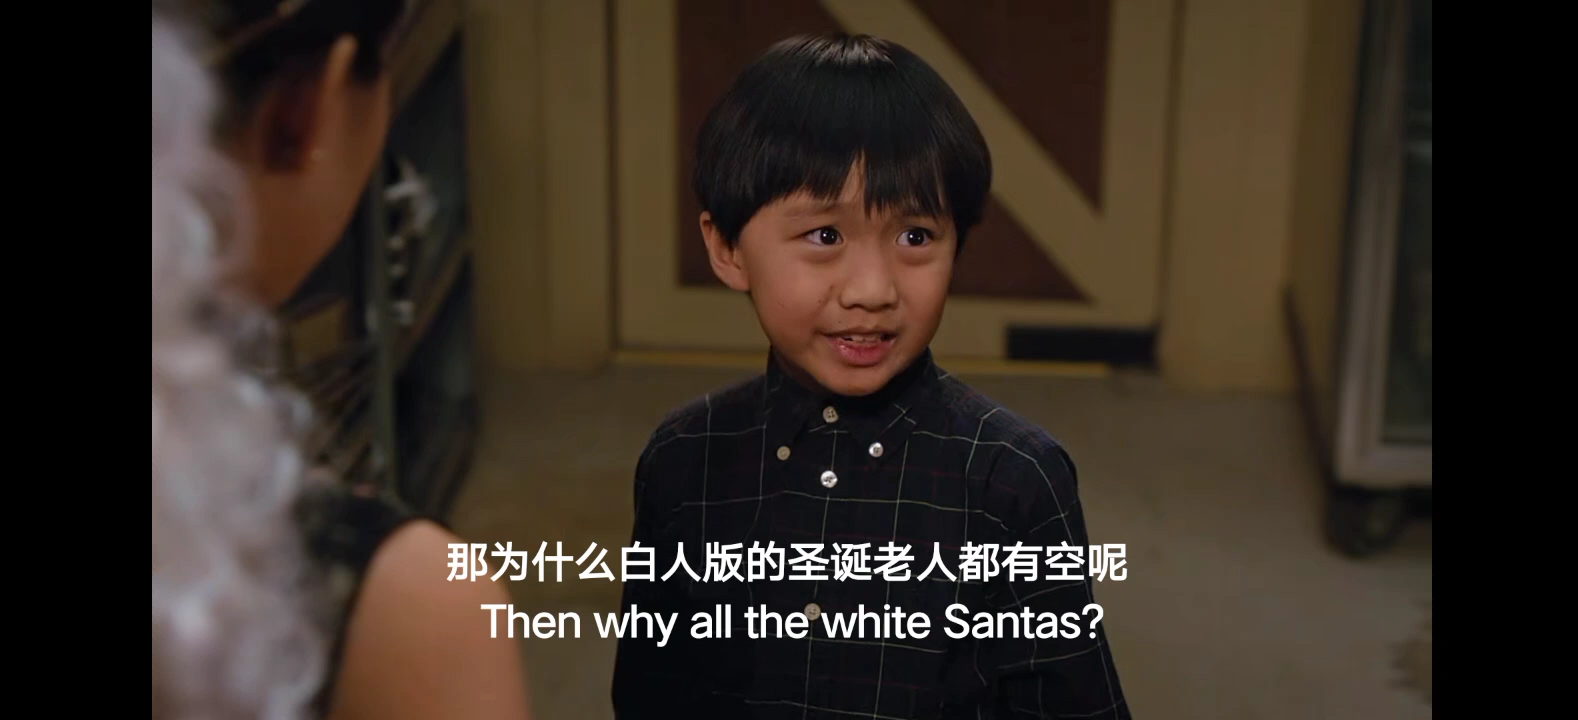 圣诞老人是中国人，这样才合理嘛哈哈哈哈哈